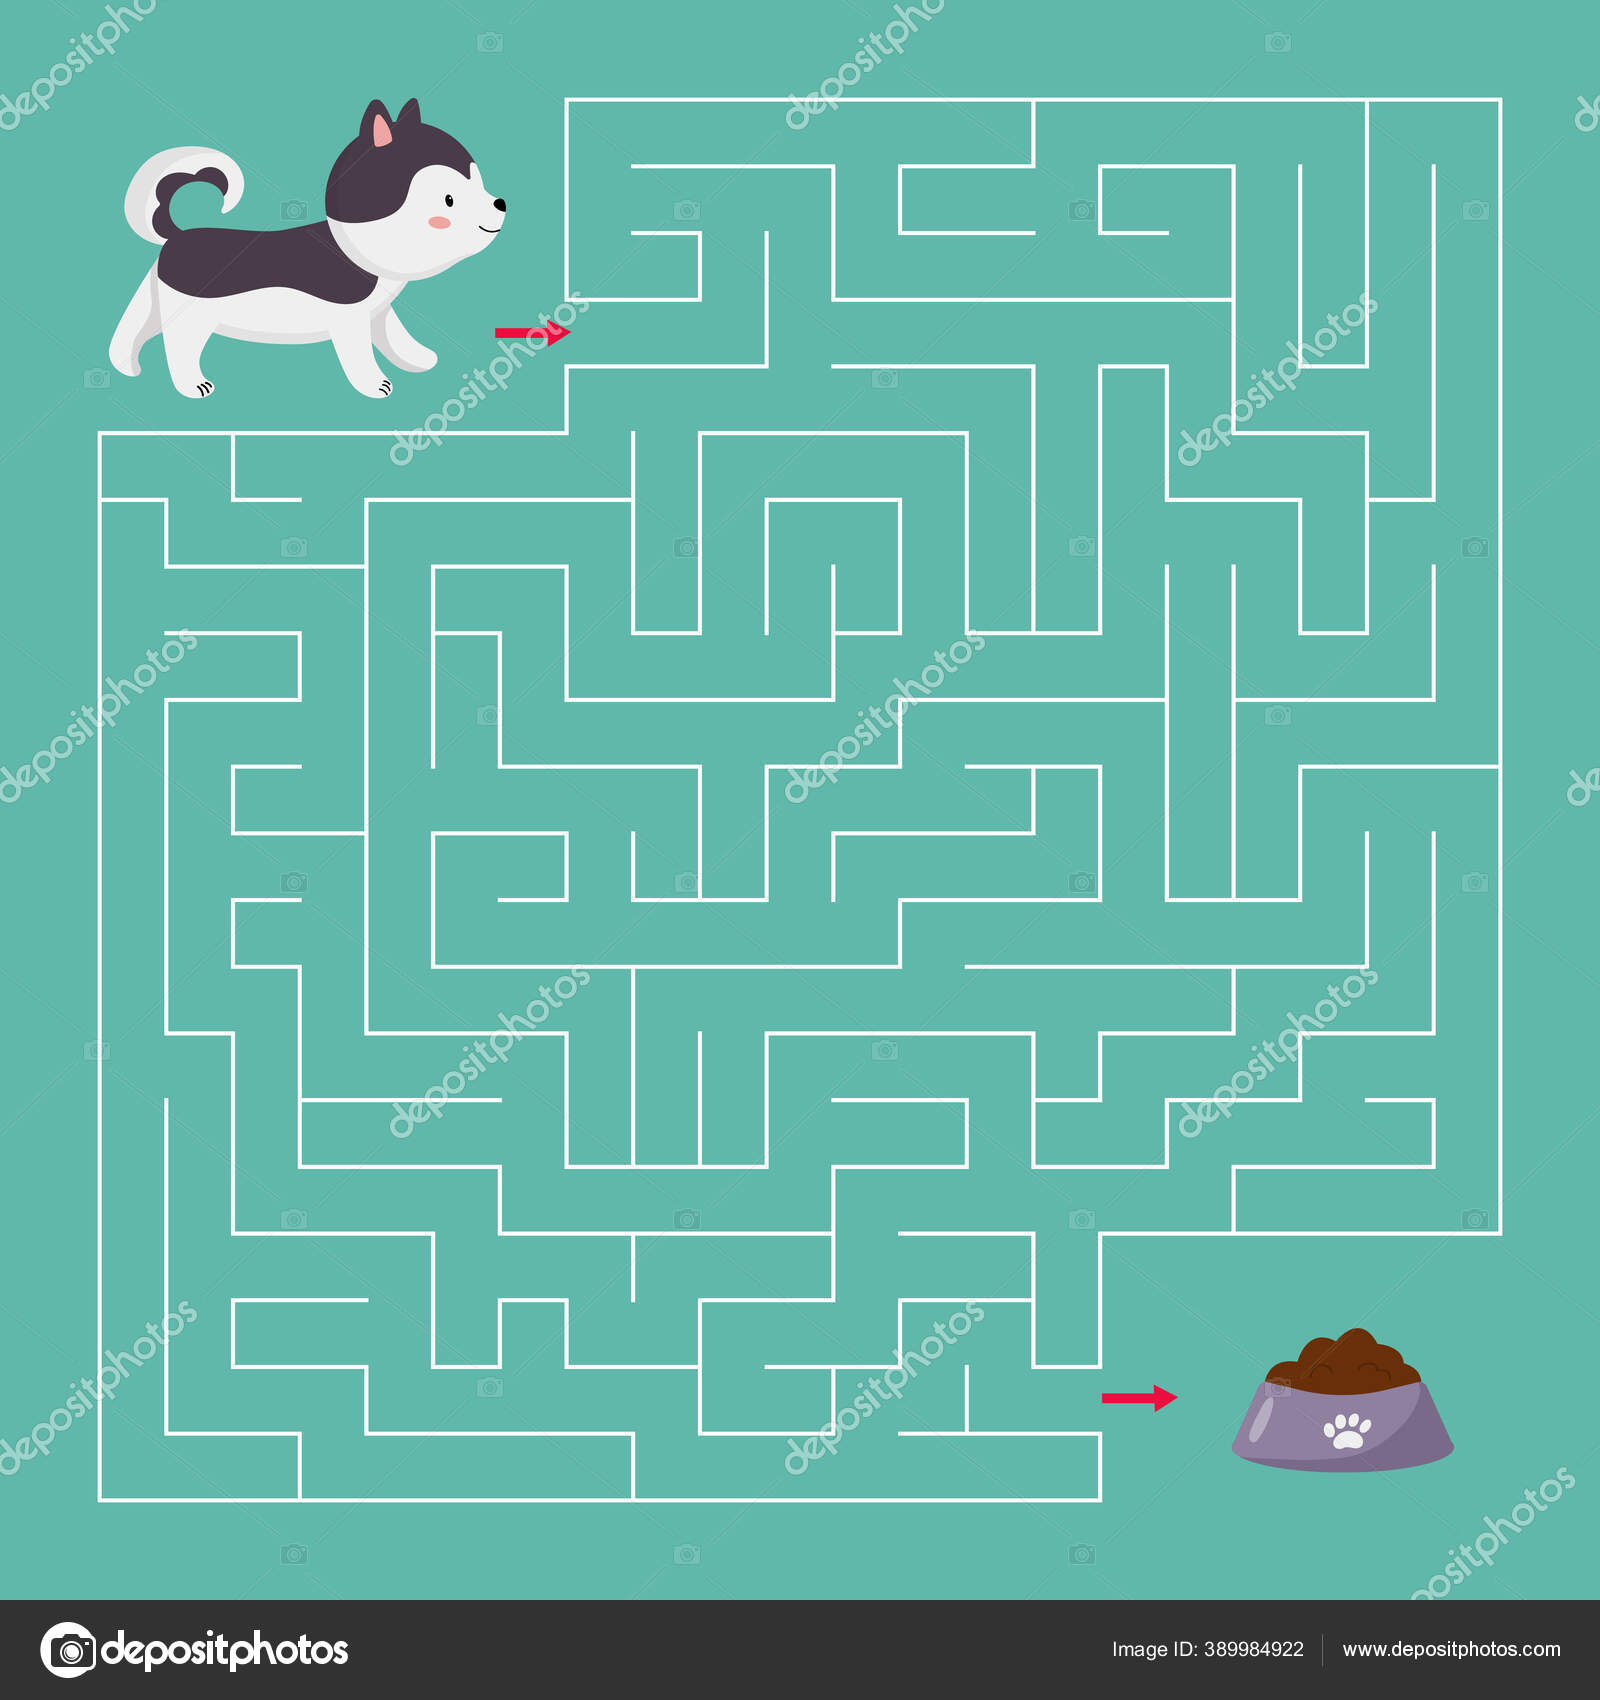 https://st4.depositphotos.com/27205526/38998/v/1600/depositphotos_389984922-stock-illustration-vector-maze-game-for-children.jpg